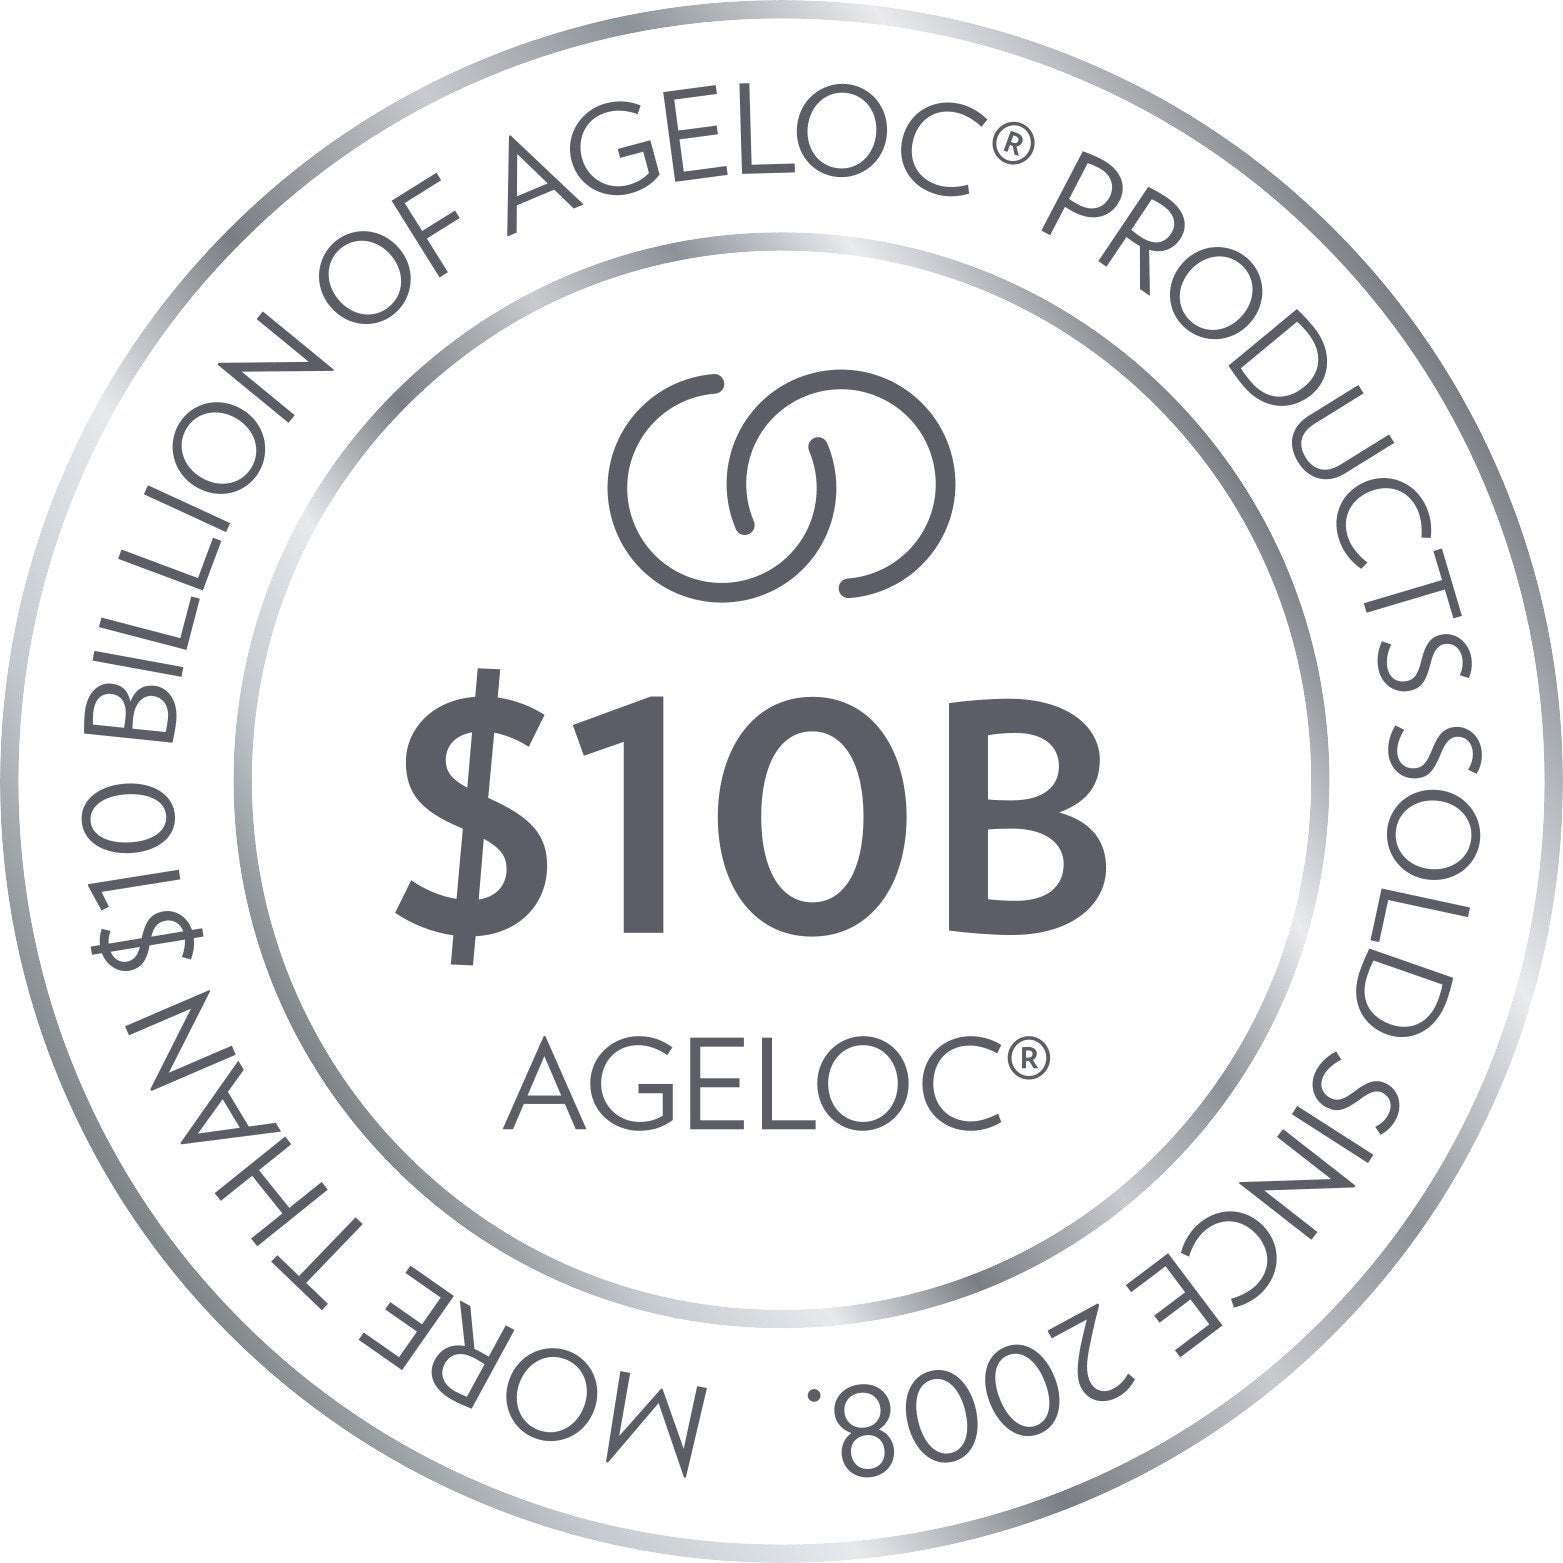 Nu Skin ageLOC Serie mehr als 10 Billion USD Umsatz